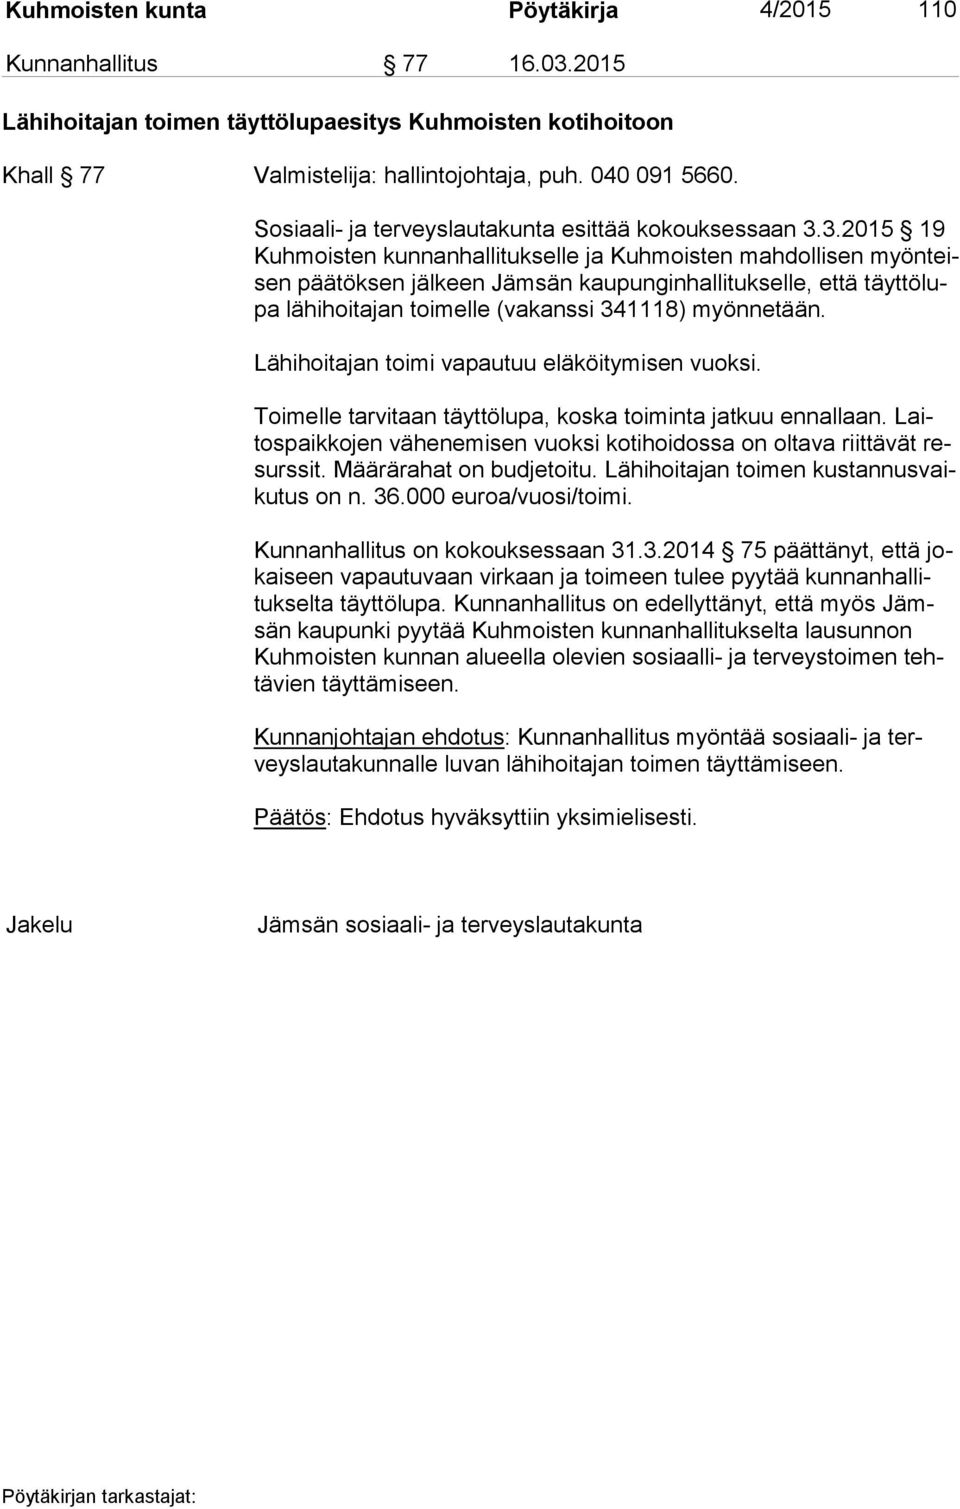 3.2015 19 Kuh mois ten kunnanhallitukselle ja Kuhmoisten mahdollisen myön teisen päätöksen jälkeen Jämsän kaupunginhallitukselle, että täyt tö lupa lähihoitajan toimelle (vakanssi 341118) myönnetään.